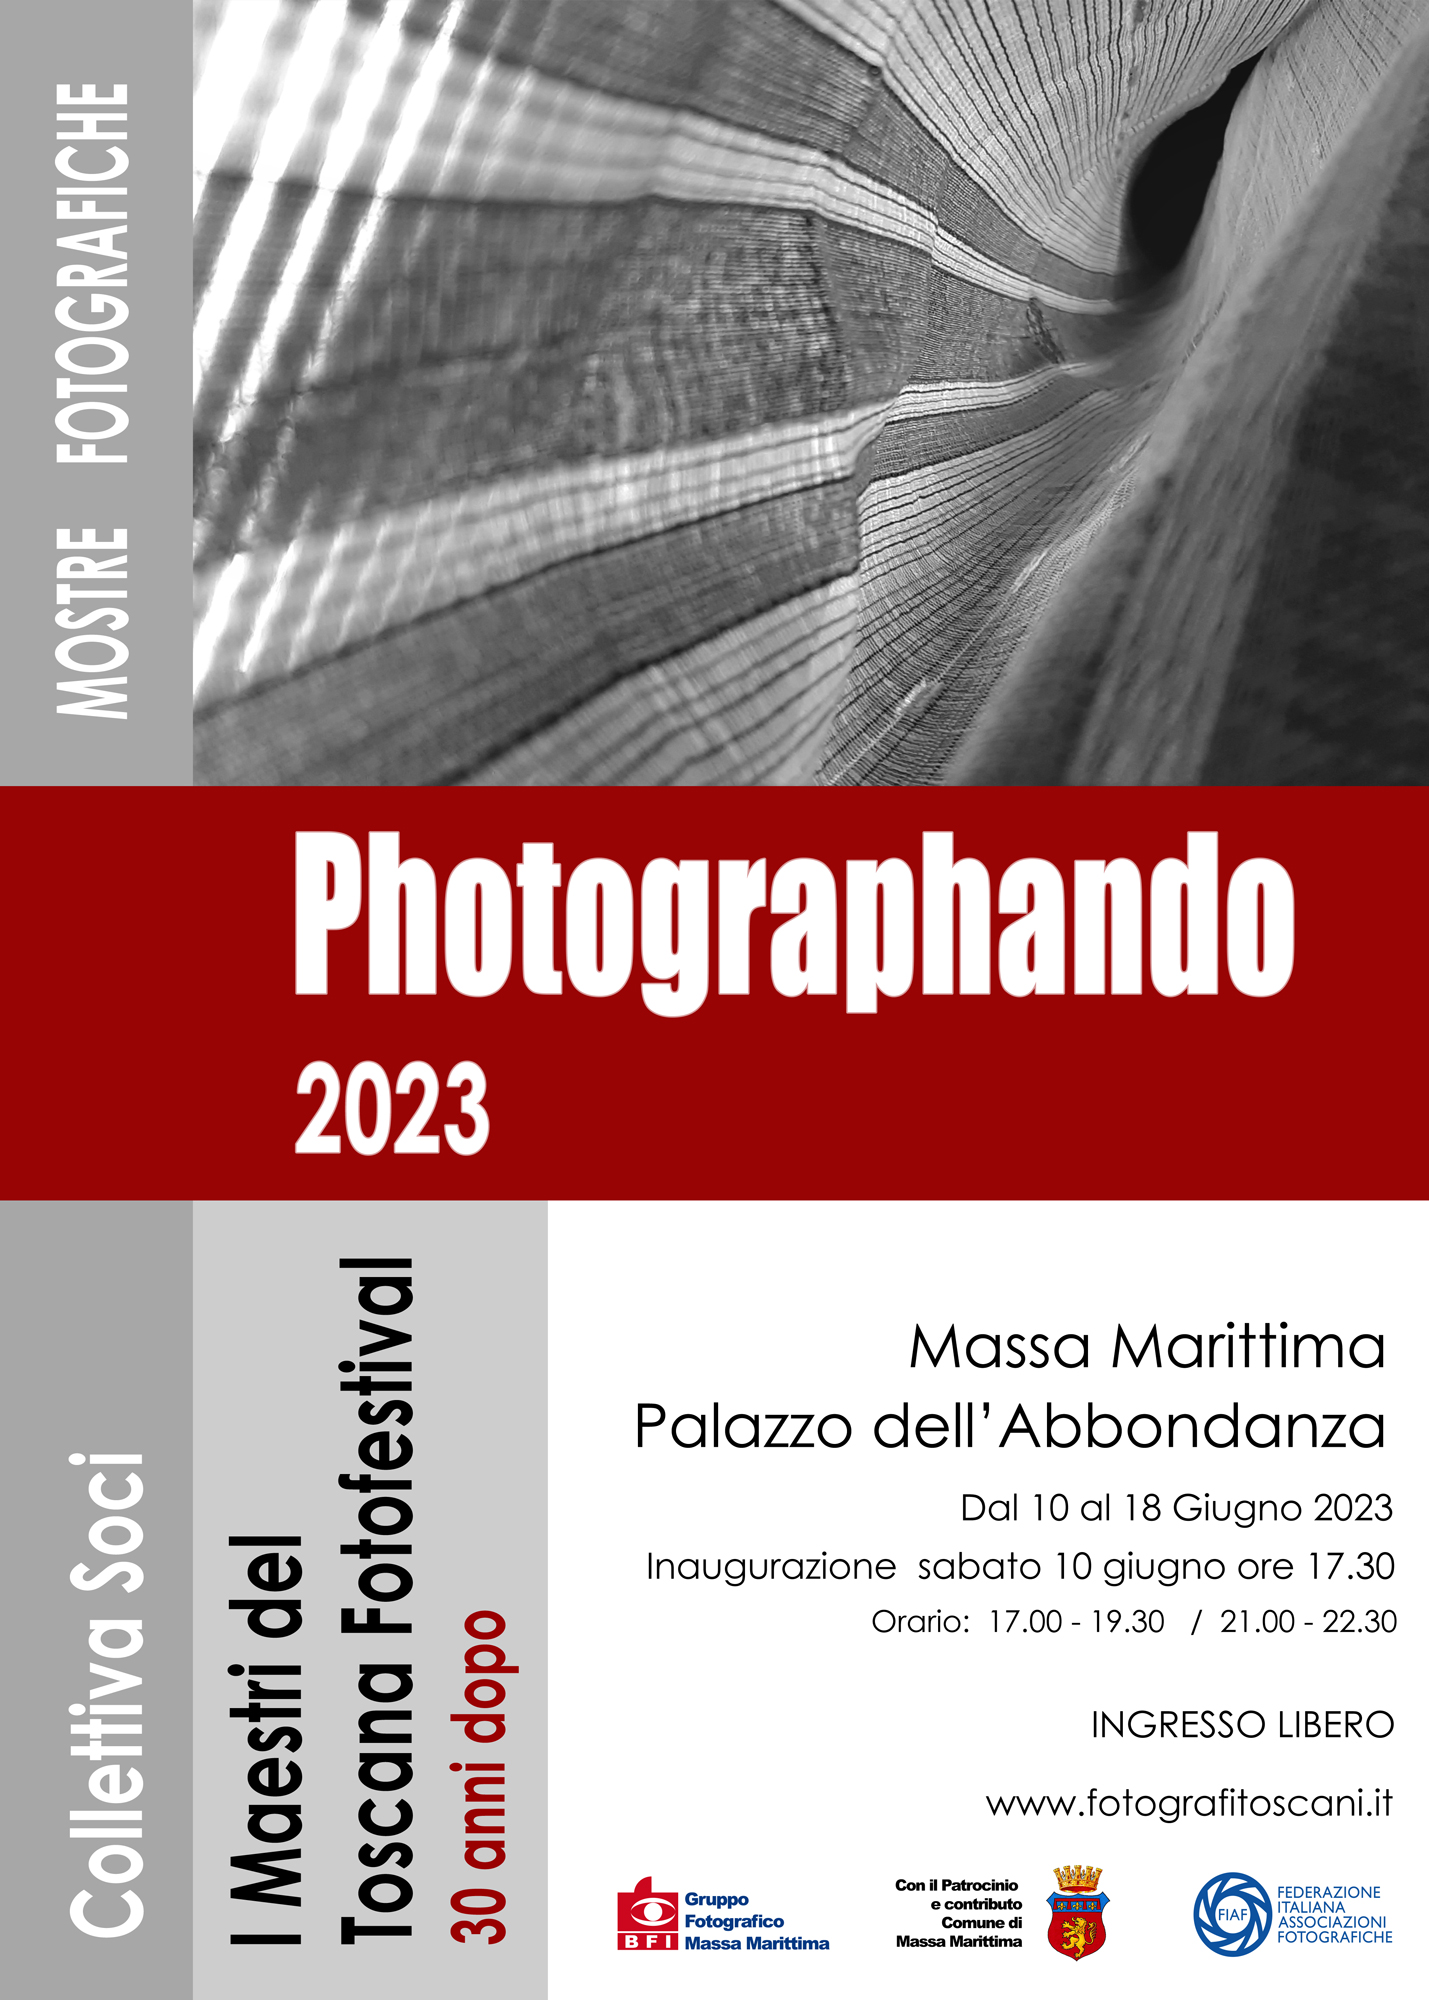 Photographando 2023